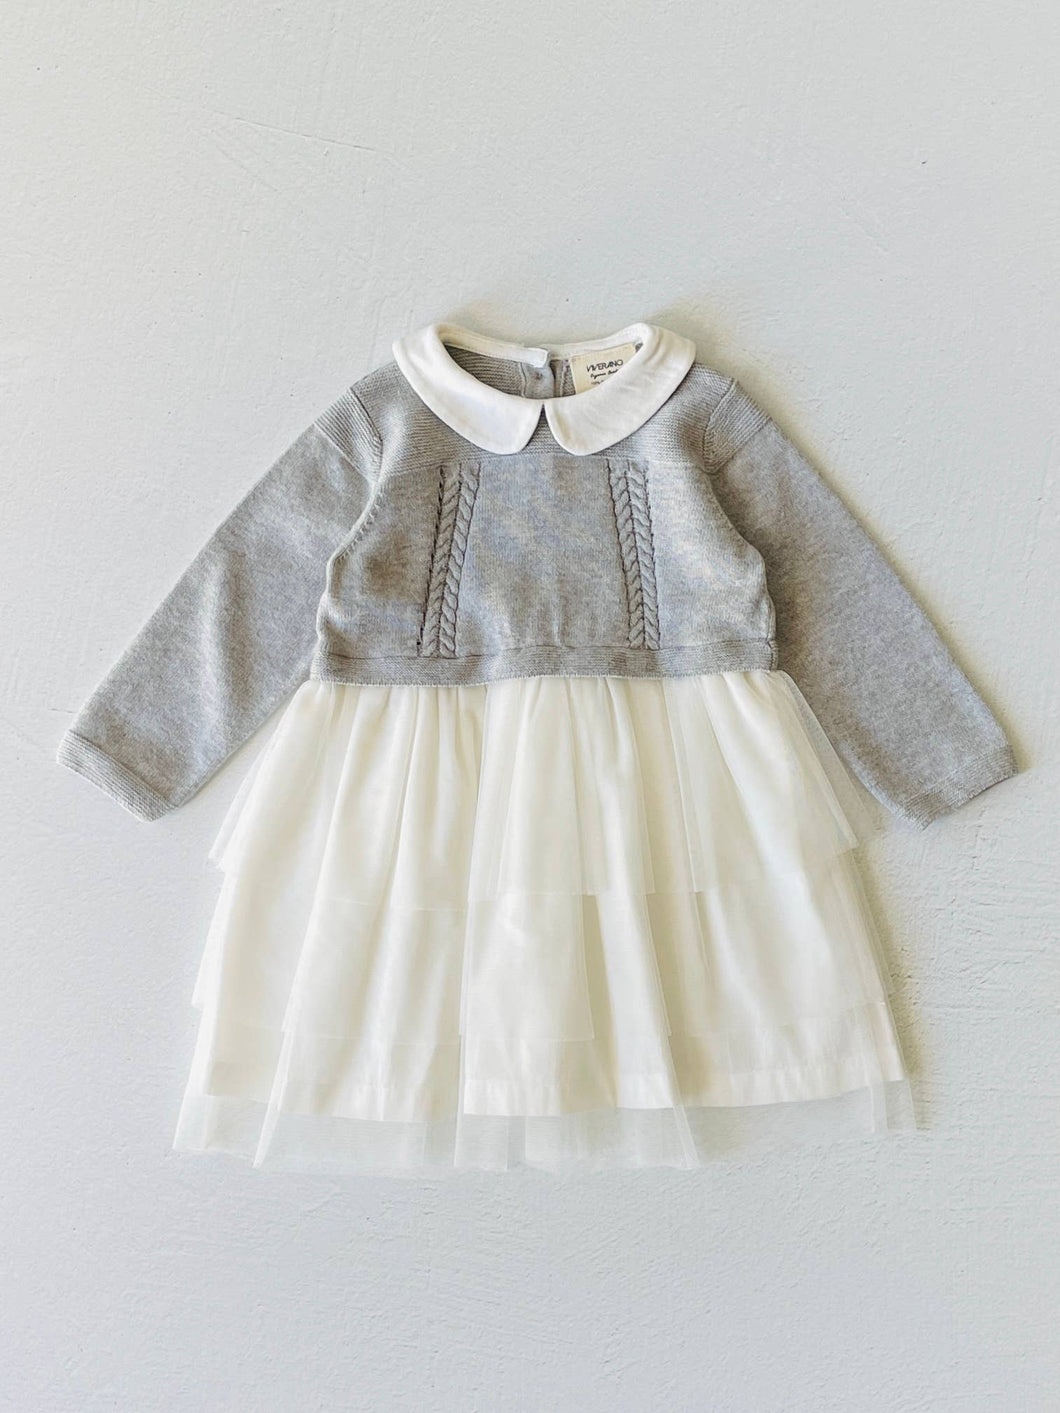 Milan White Peter Pan Sweater Knit Baby Tutu Dress: Grey Heather